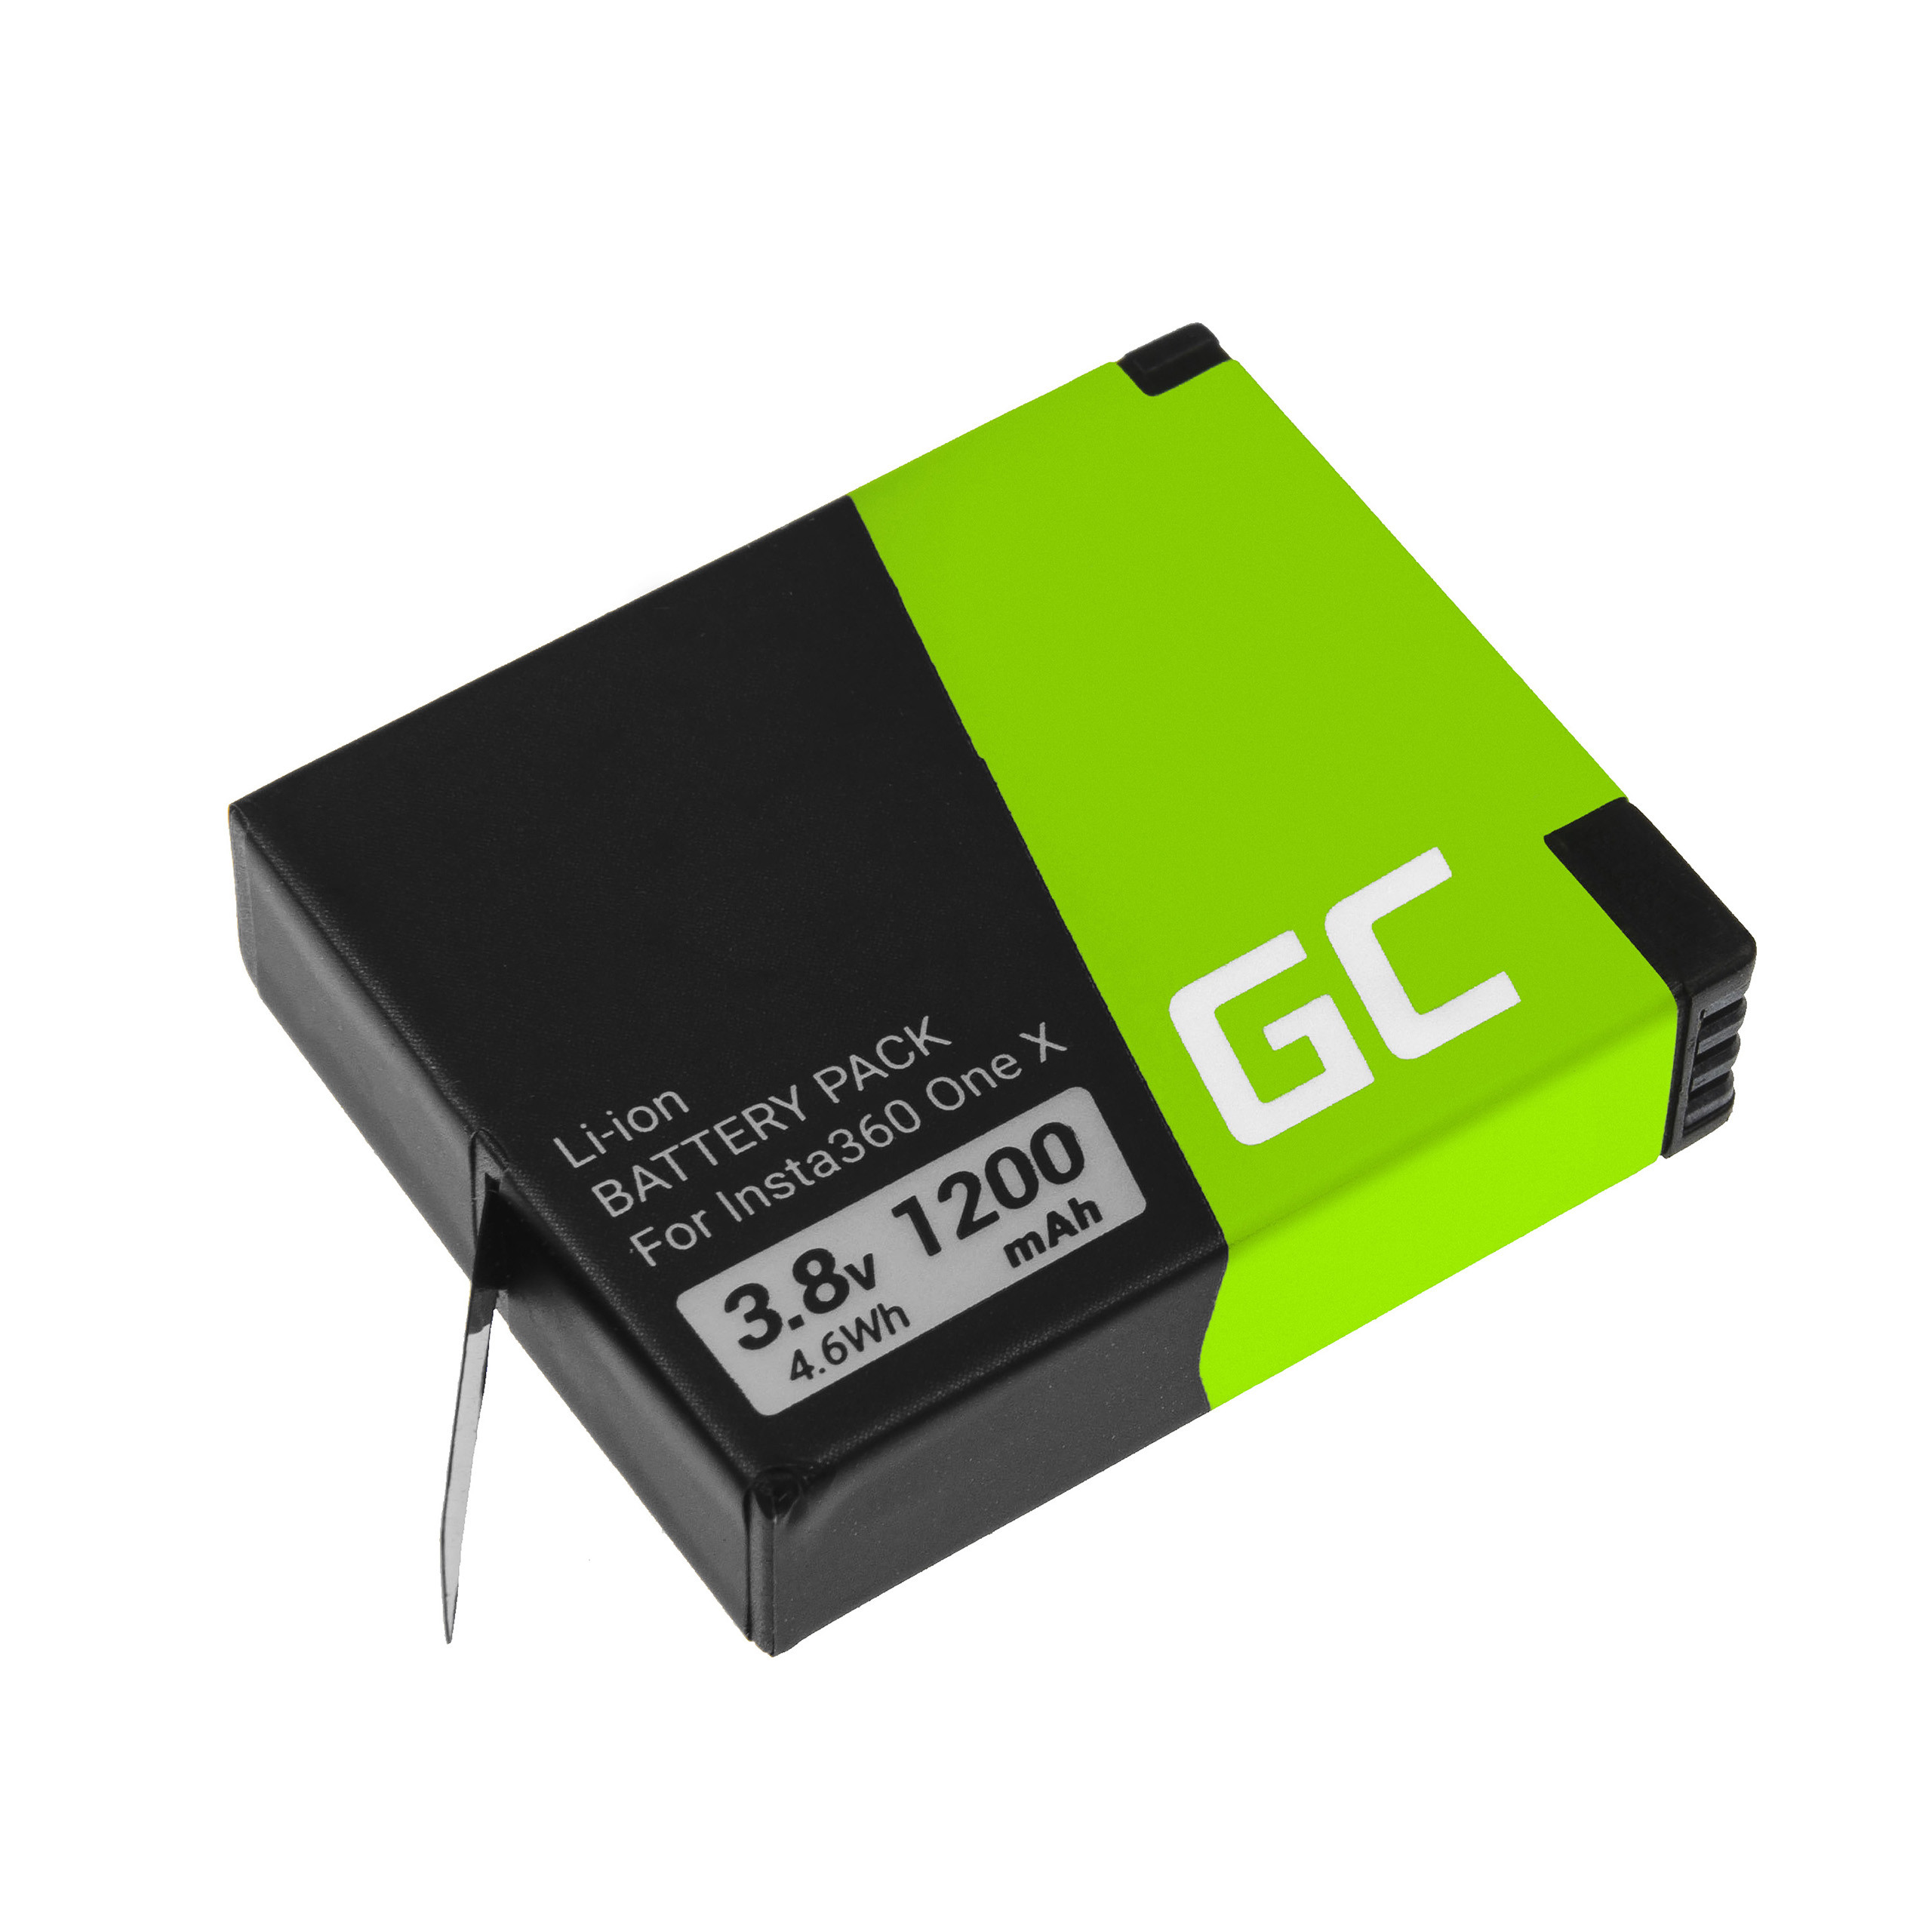 Green Cell CB90 Baterie Instax INSTA360 ONE X 3.8V 1200mAh Li-Ion – neoriginální